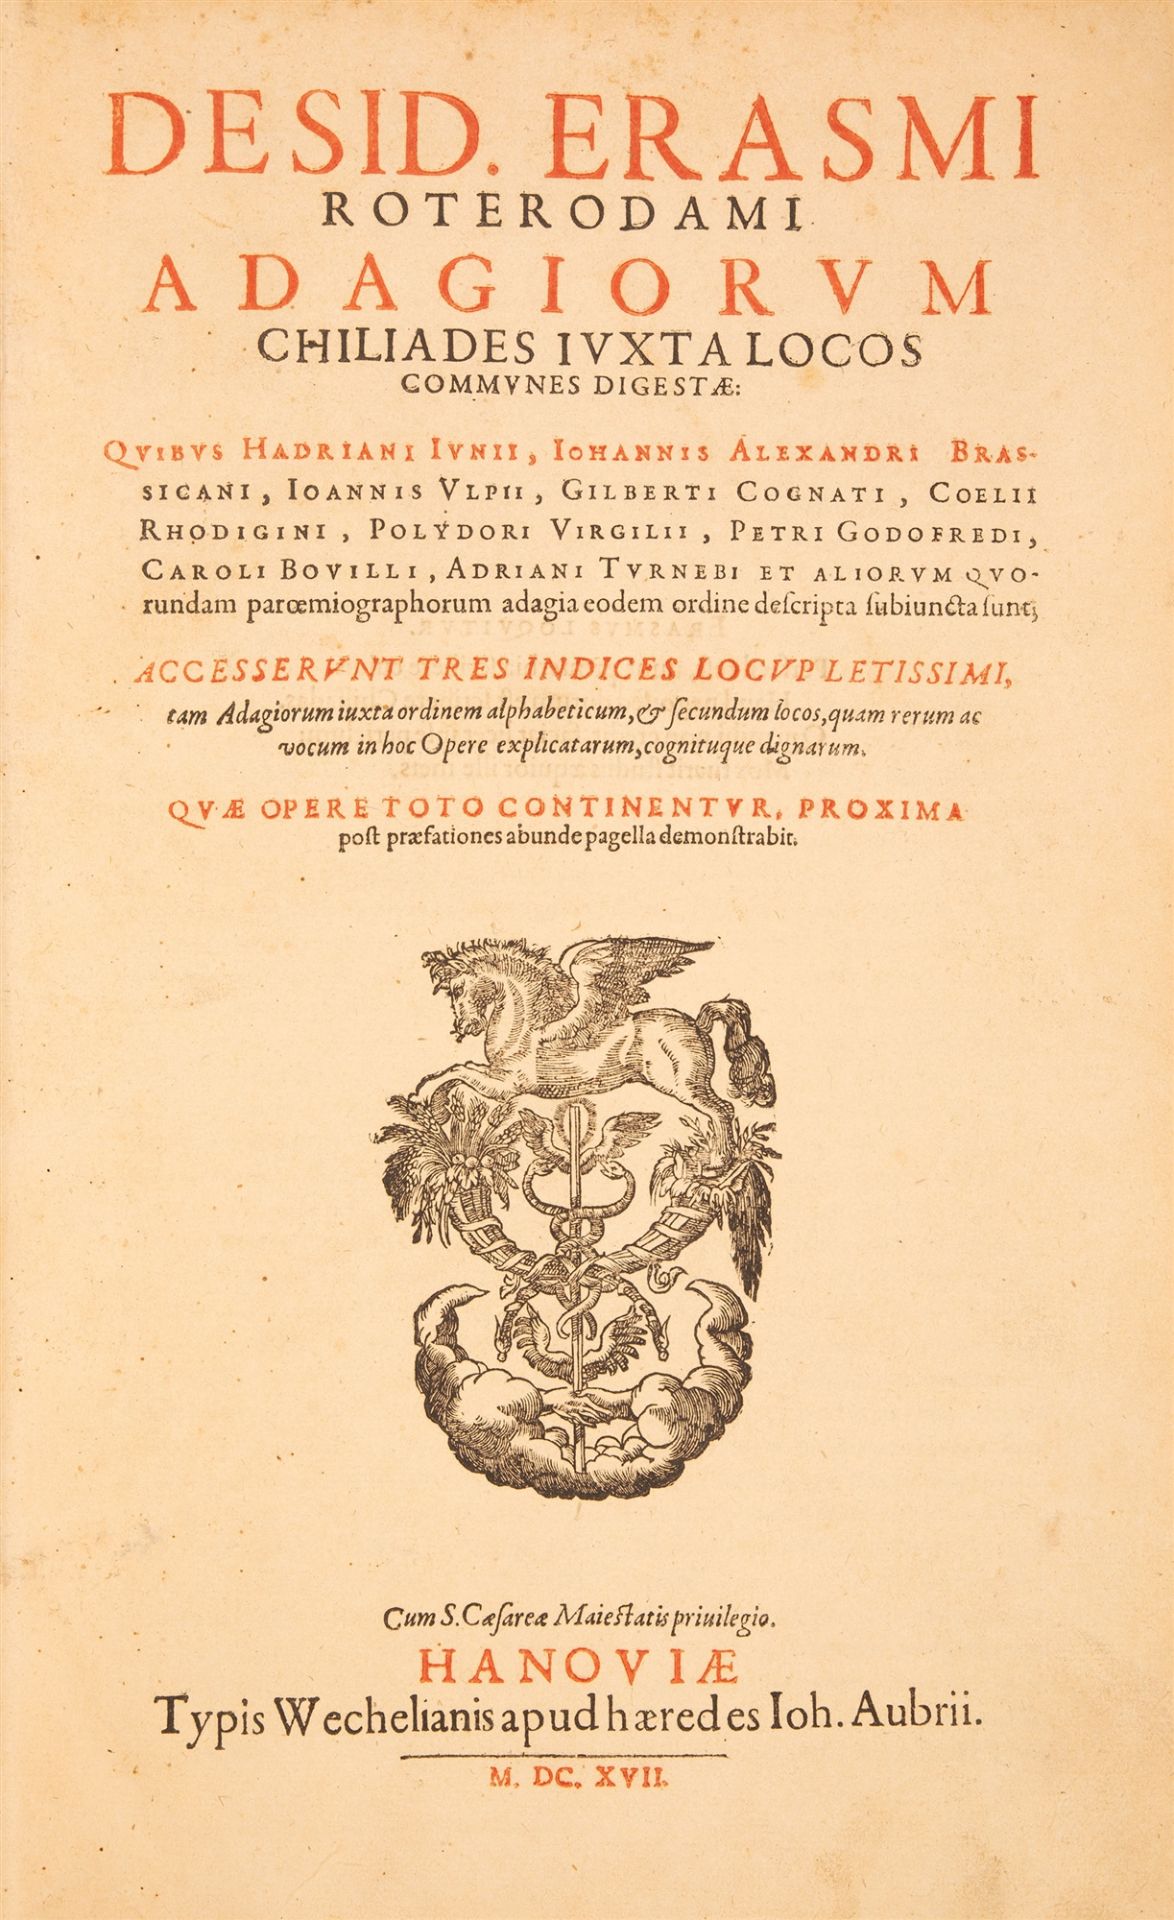 Erasmus v. Rotterdam, Adagiorum chiliades iuxta locos communes digestae. Hanau 1617.